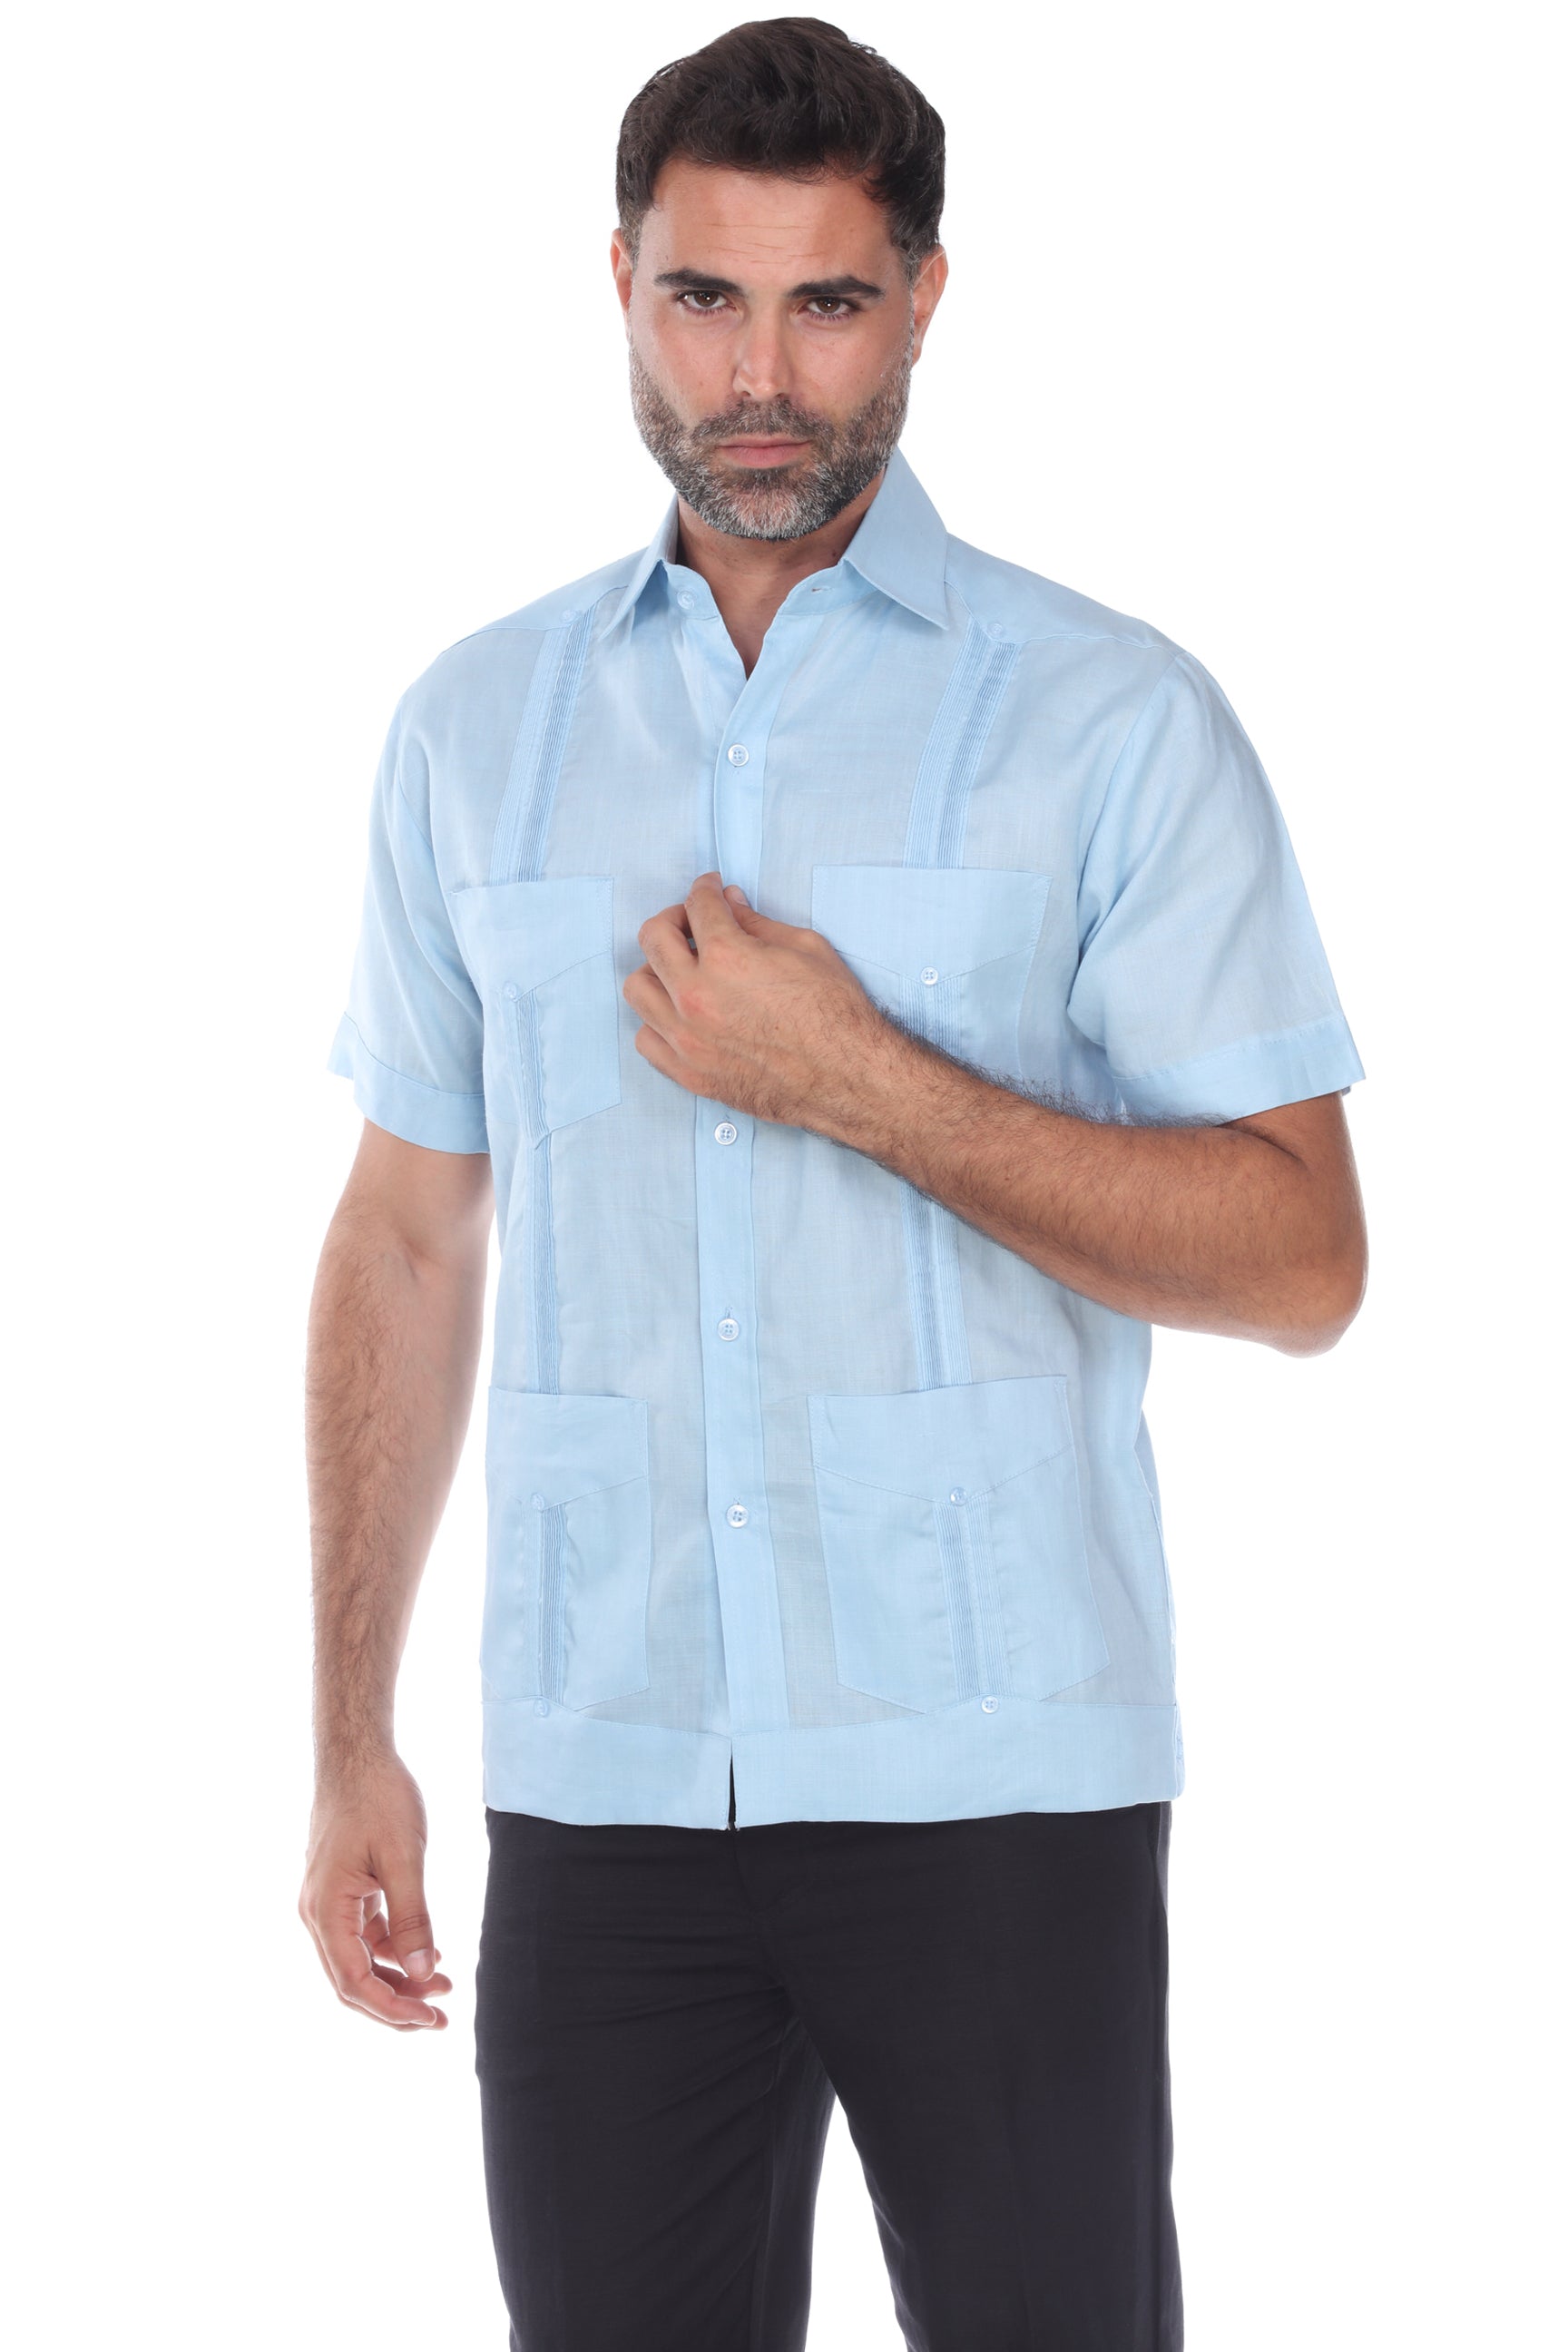 Men's Clothing, Guayabera Shirt & Linen Shirts